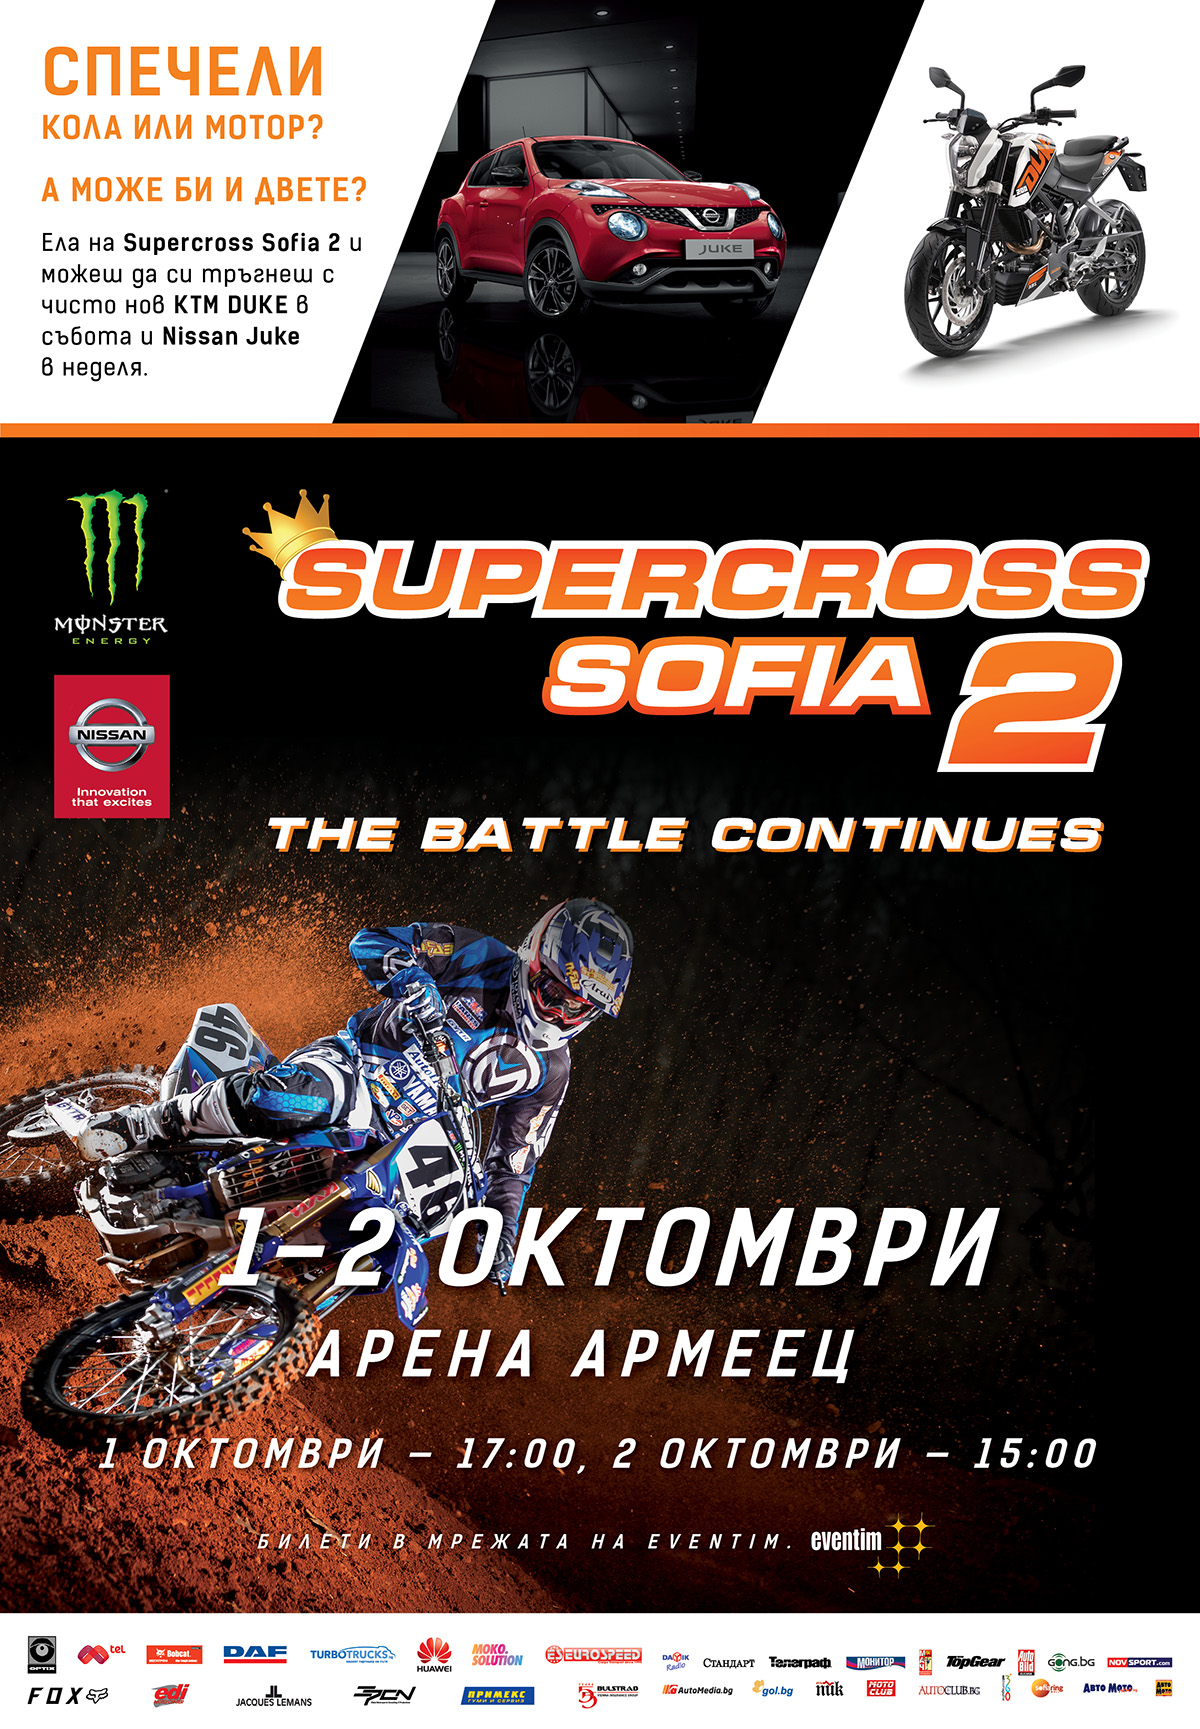 Подаряват кола и мотор на Supercross Sofia 2